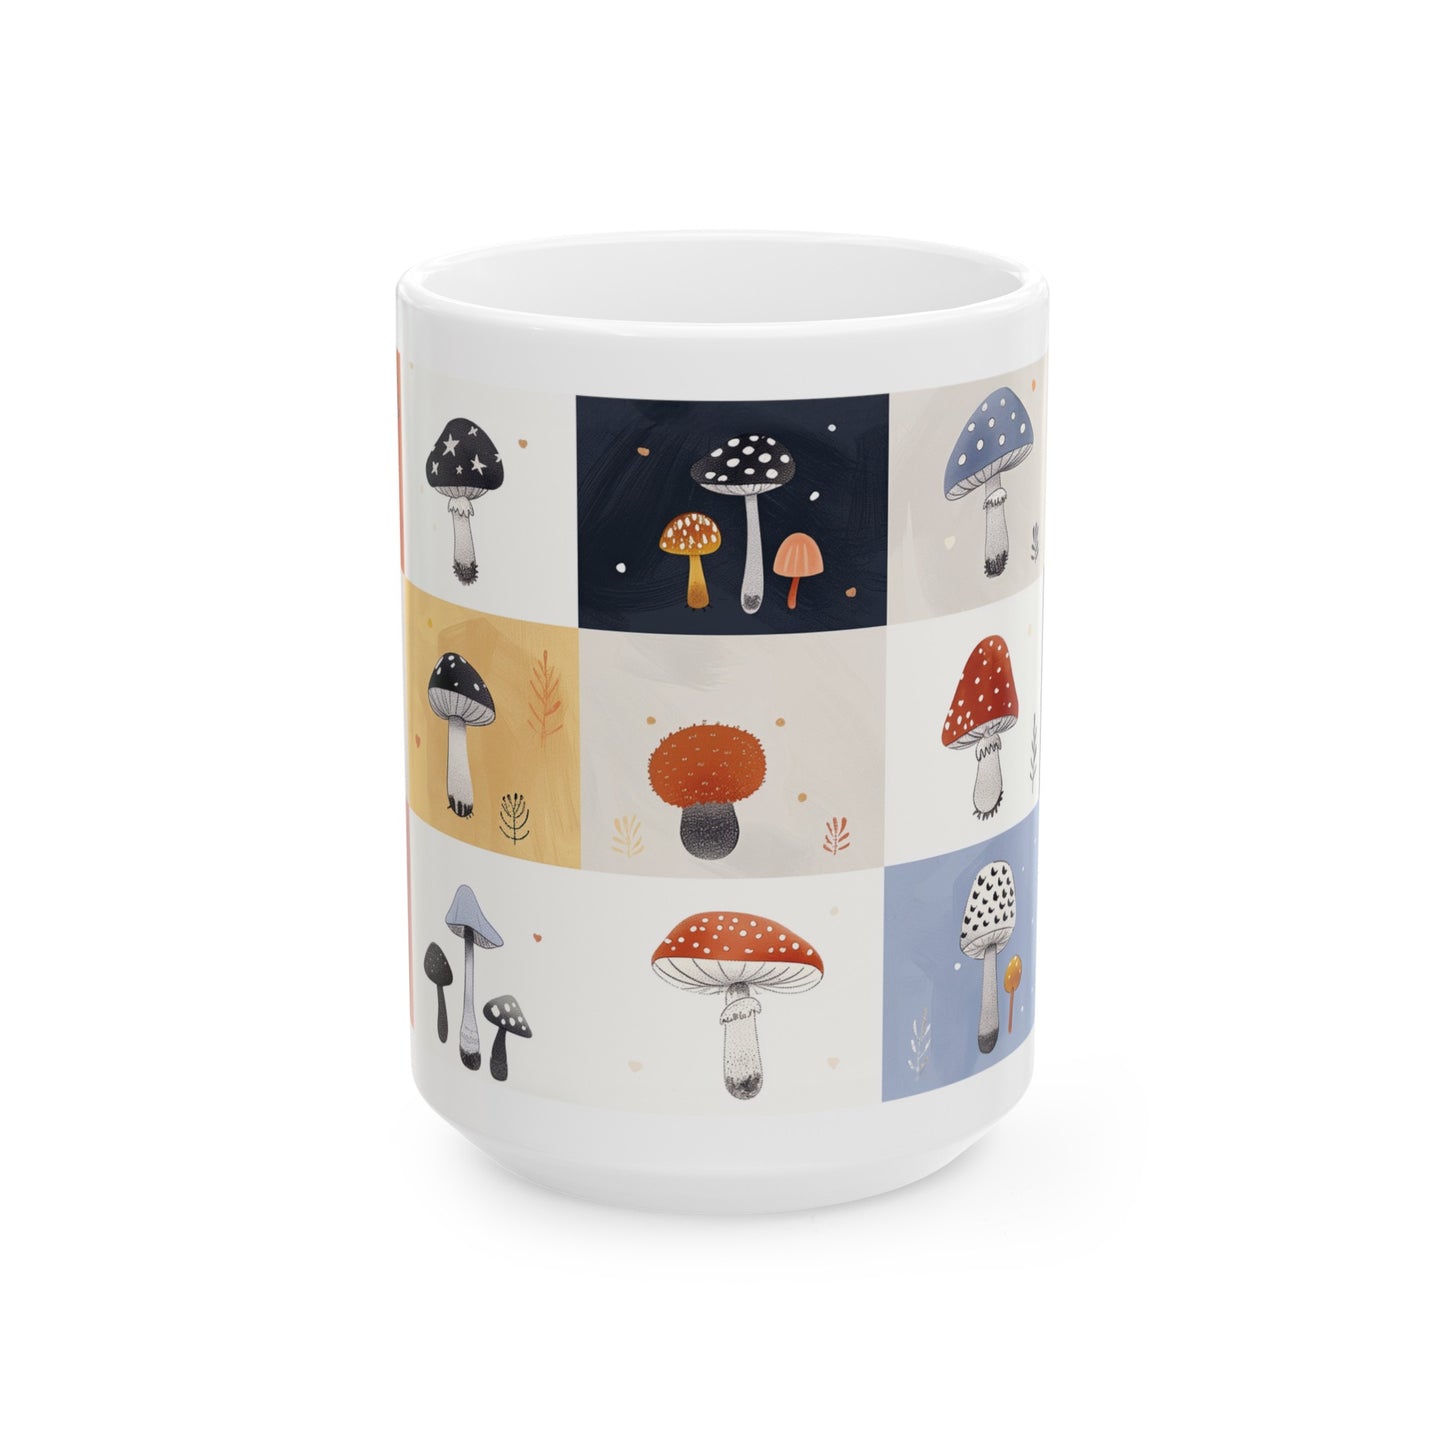 Mushroom Mug, Cute Mushroom Mug, Home Decor Mug, Tea Cup, Mushroom Cottagecore Mug, Coffee Mug, Colorful Mushroom Mug, House Warming Gift